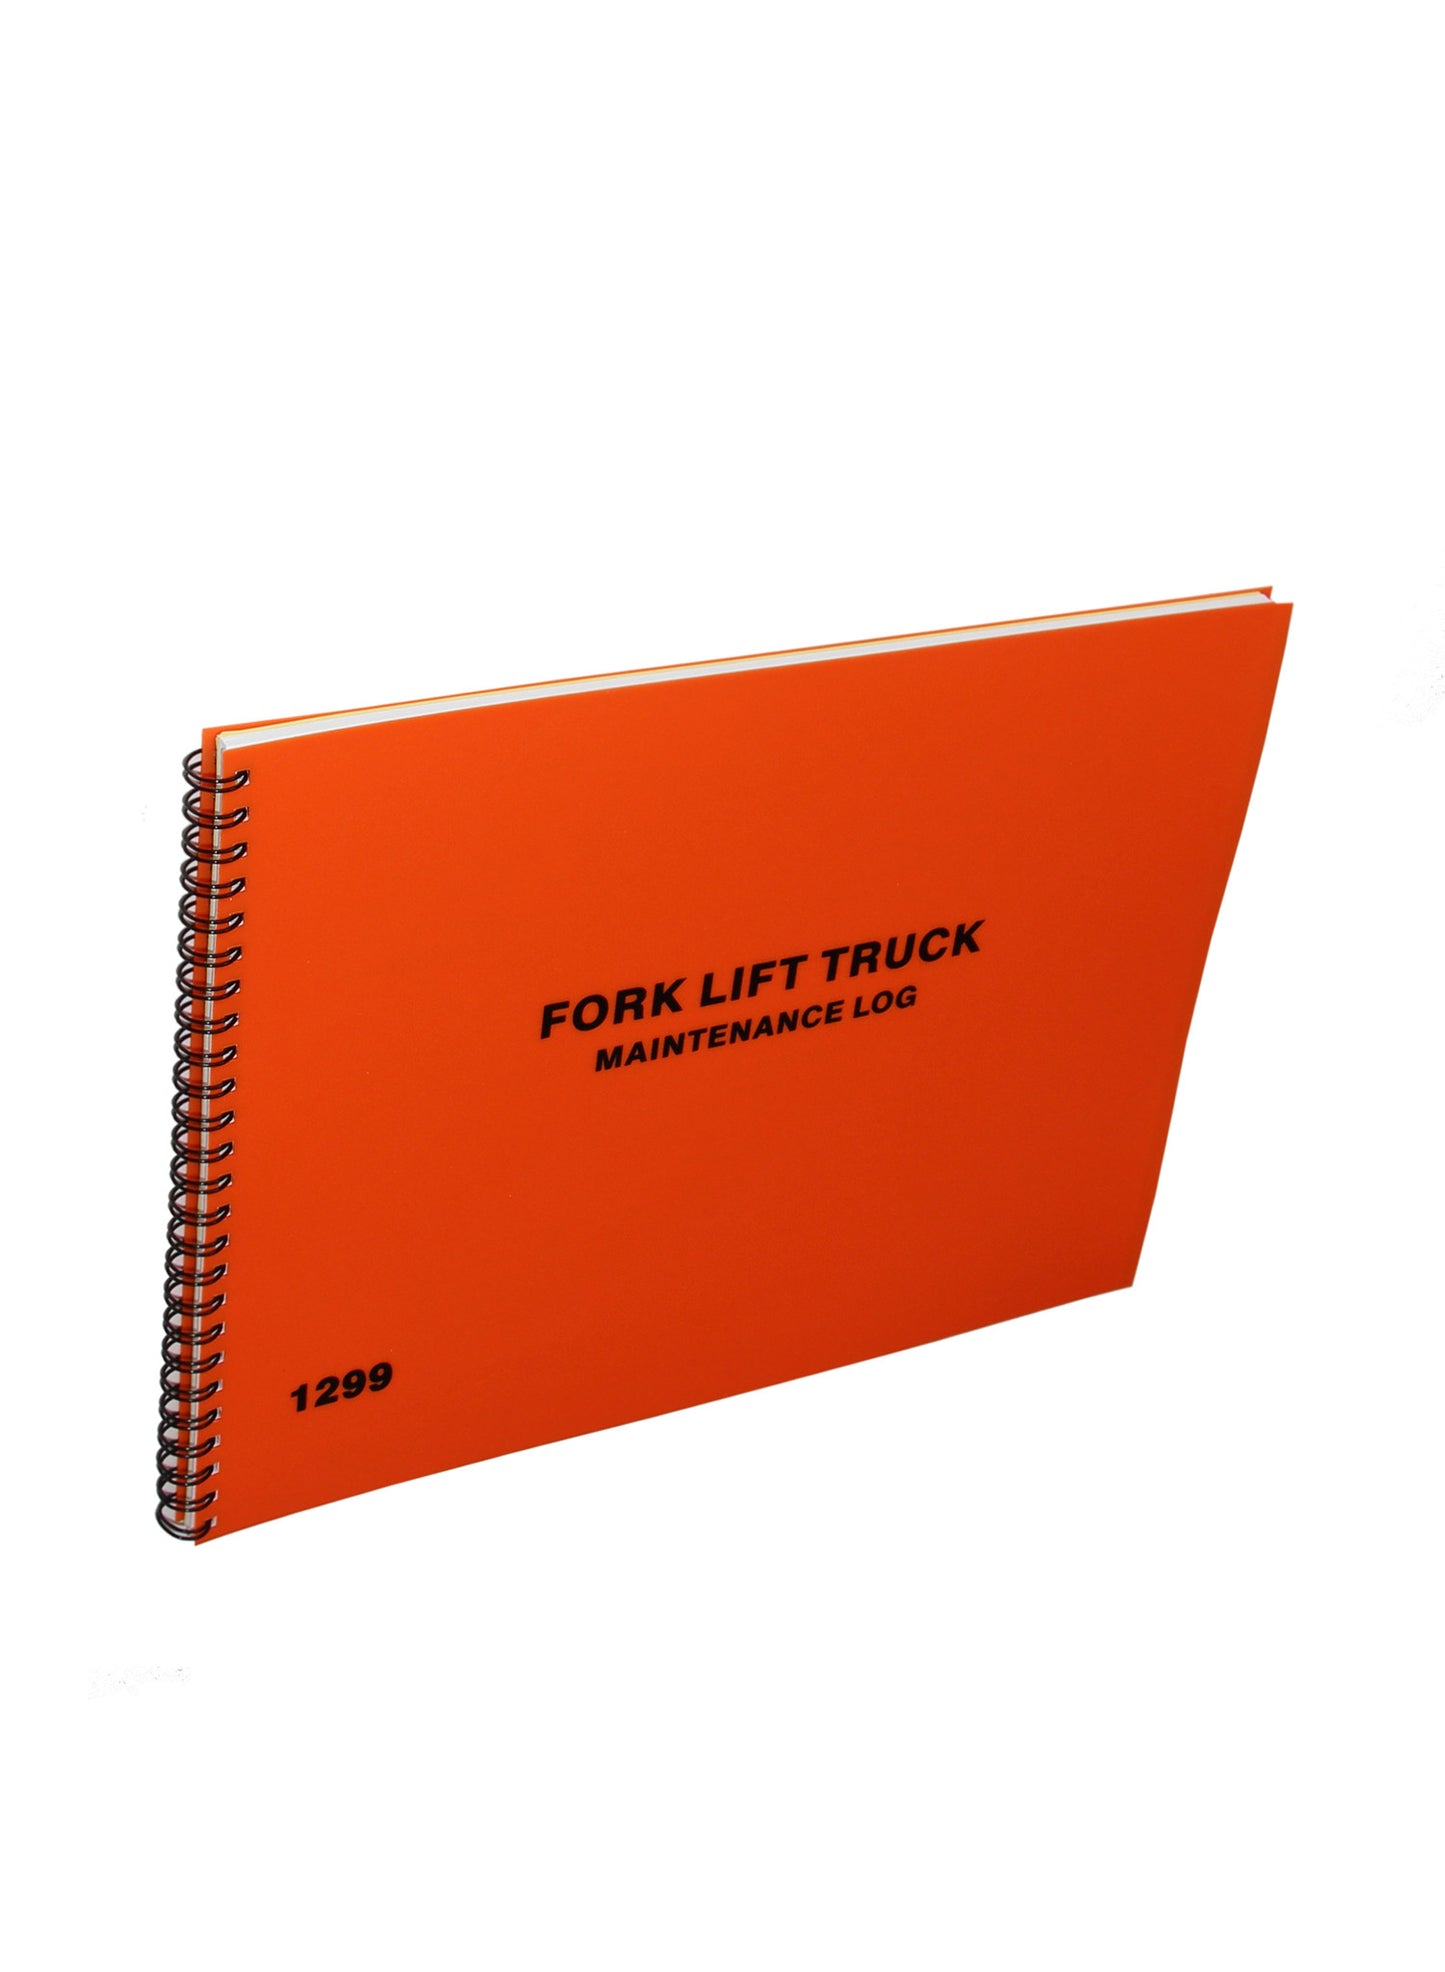 Fork Lift Truck Maintenance Log Book - Front